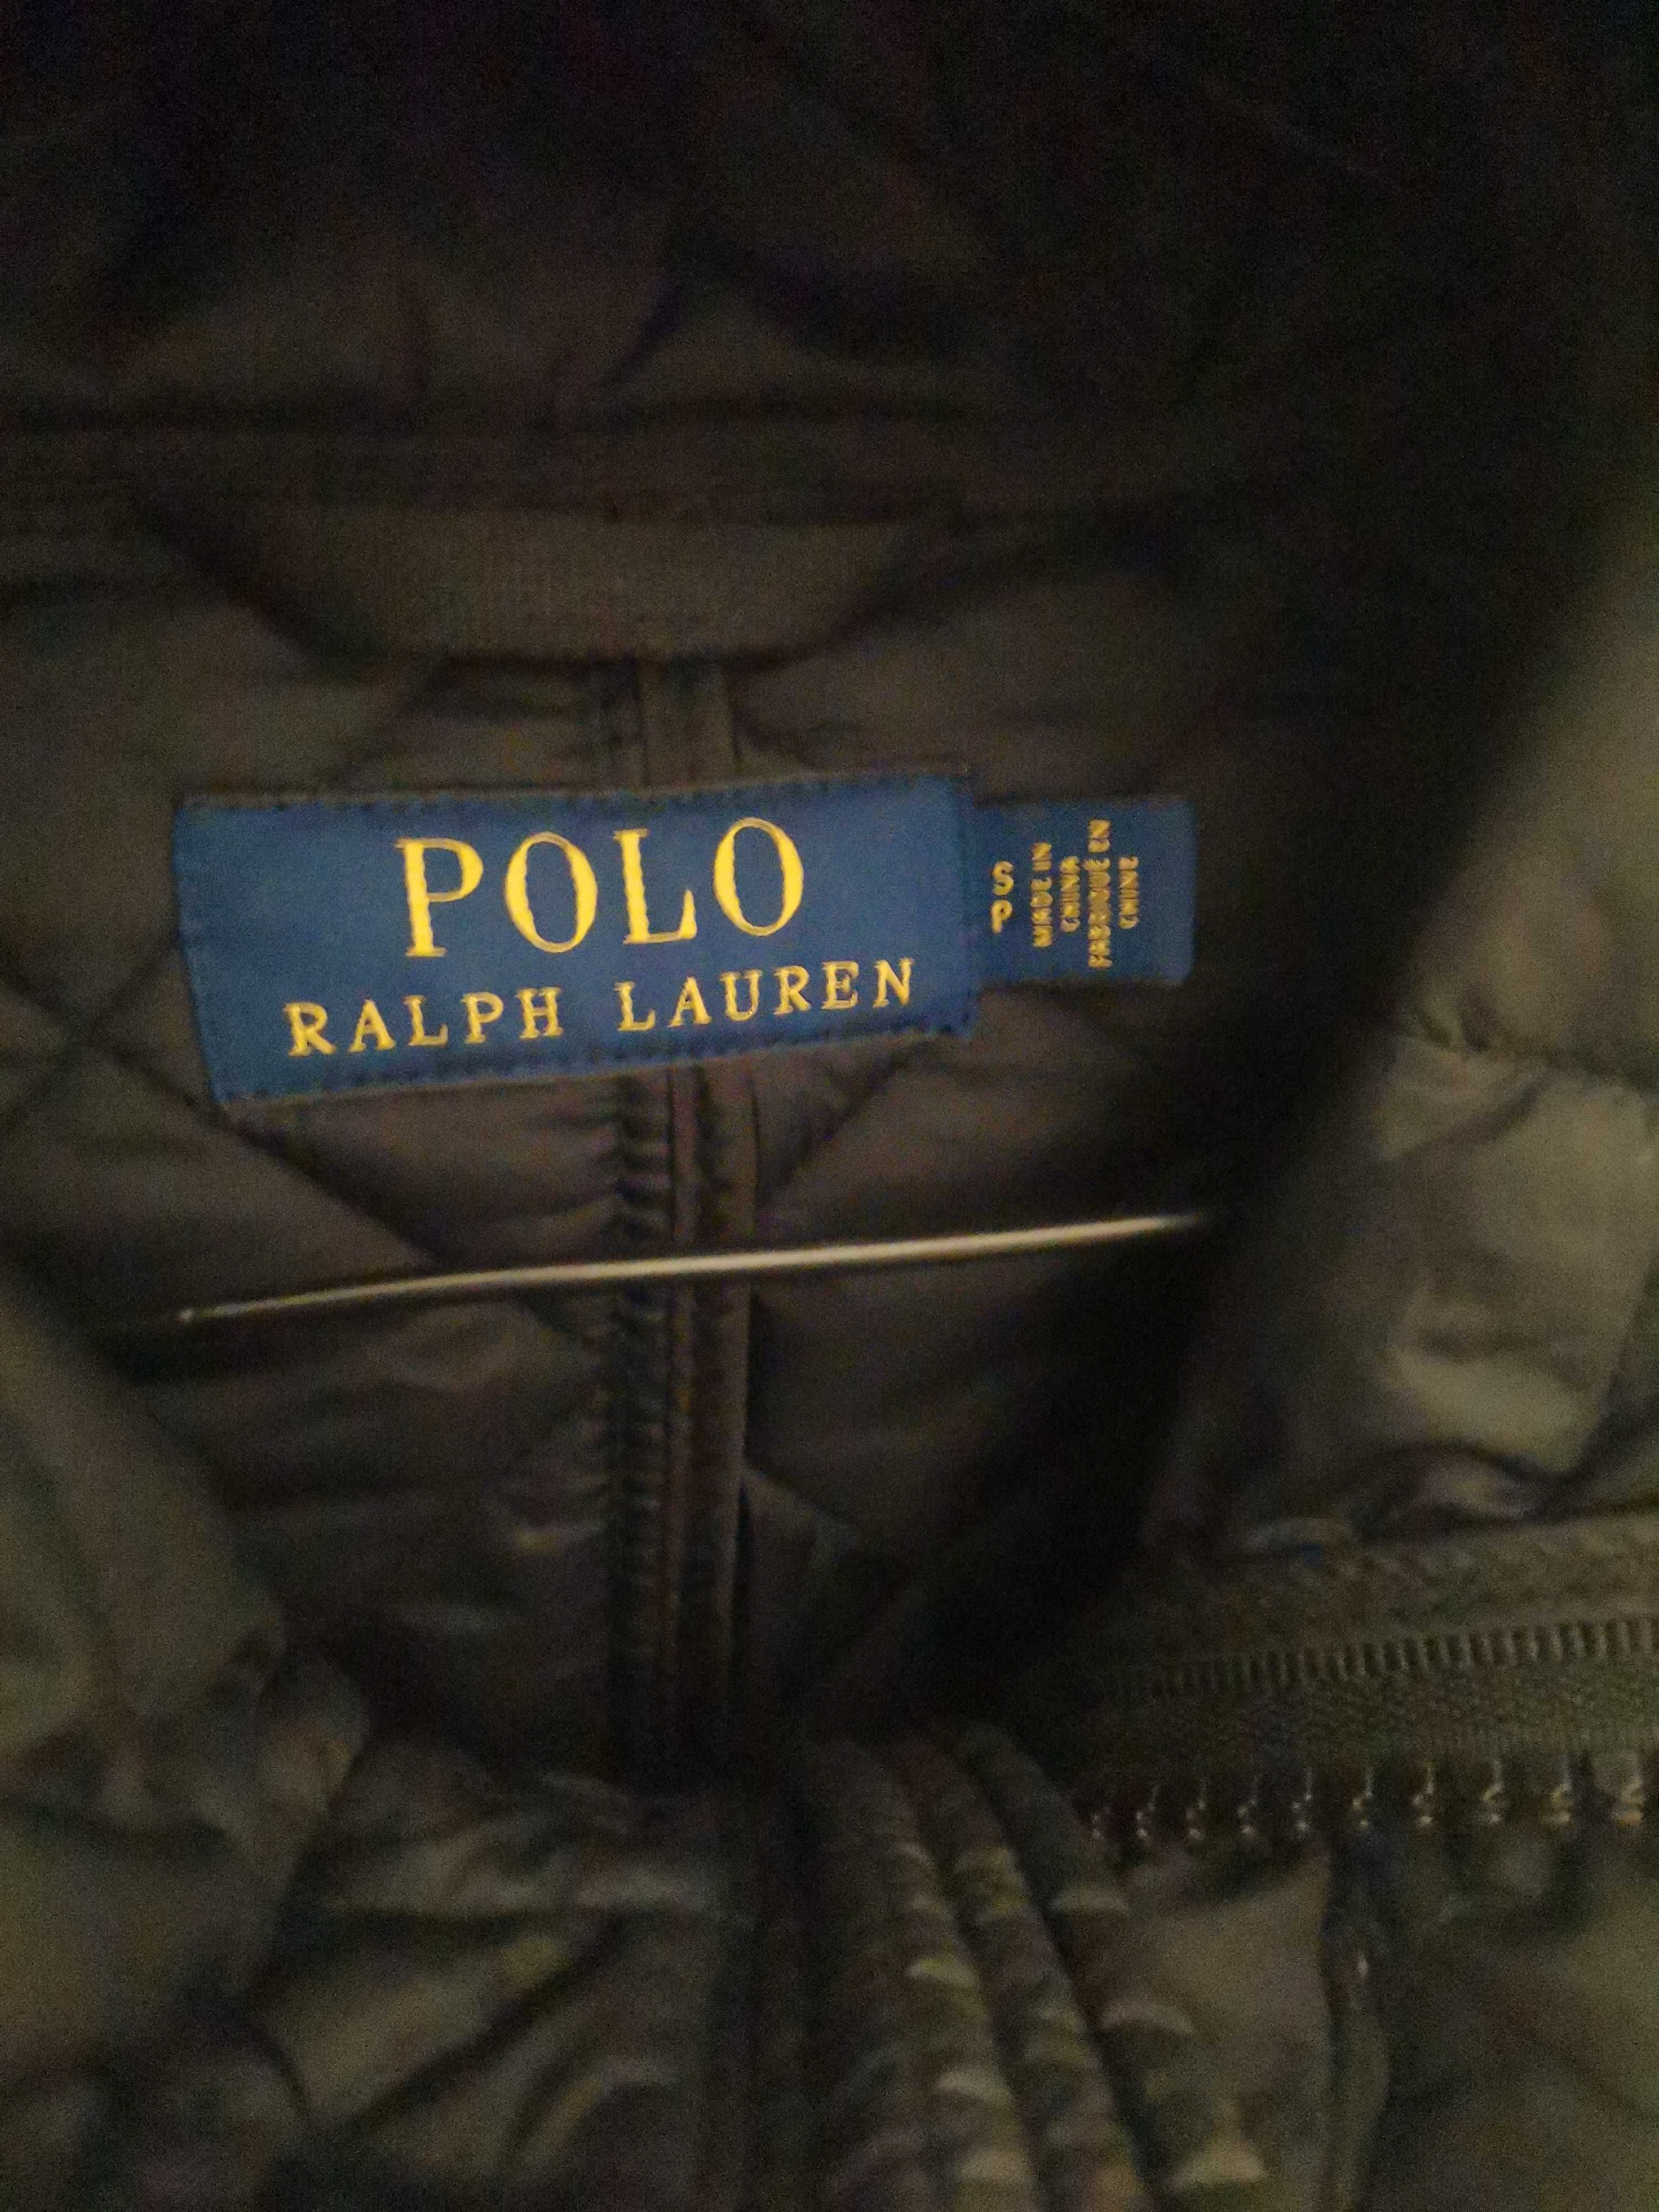 Polo Ralph Lauren Jacket.